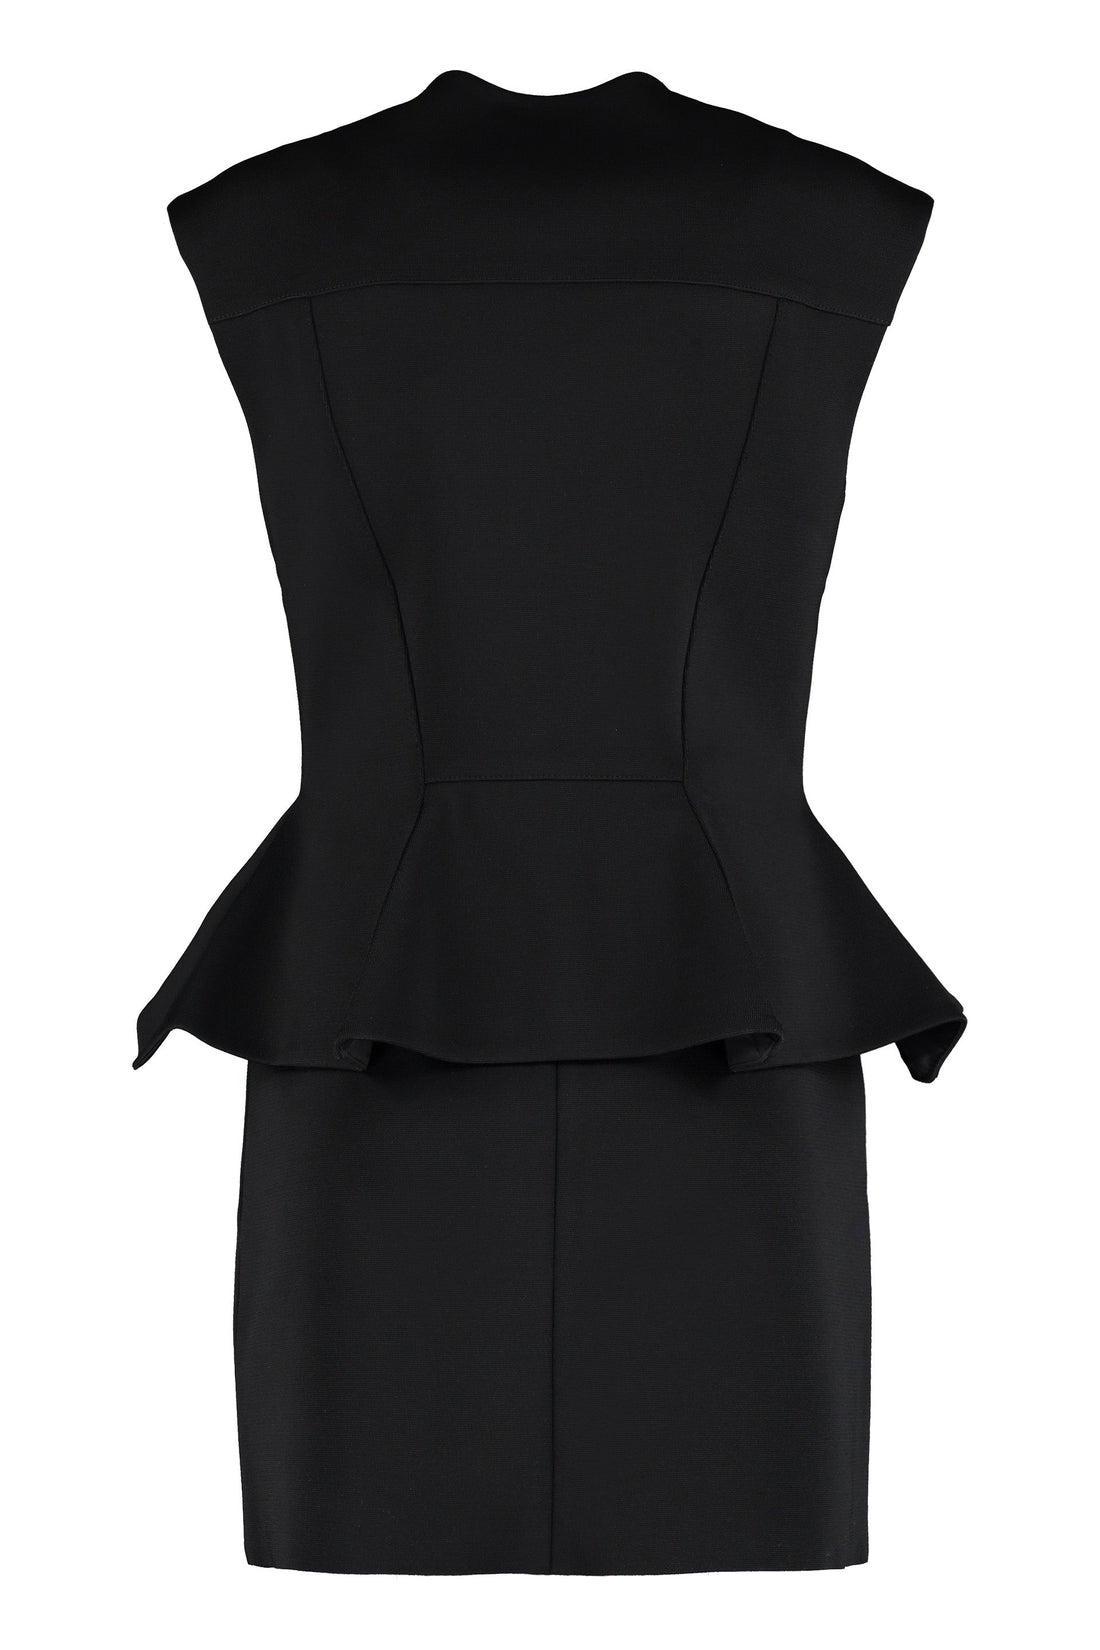 Givenchy-OUTLET-SALE-Peplum sheath dress-ARCHIVIST